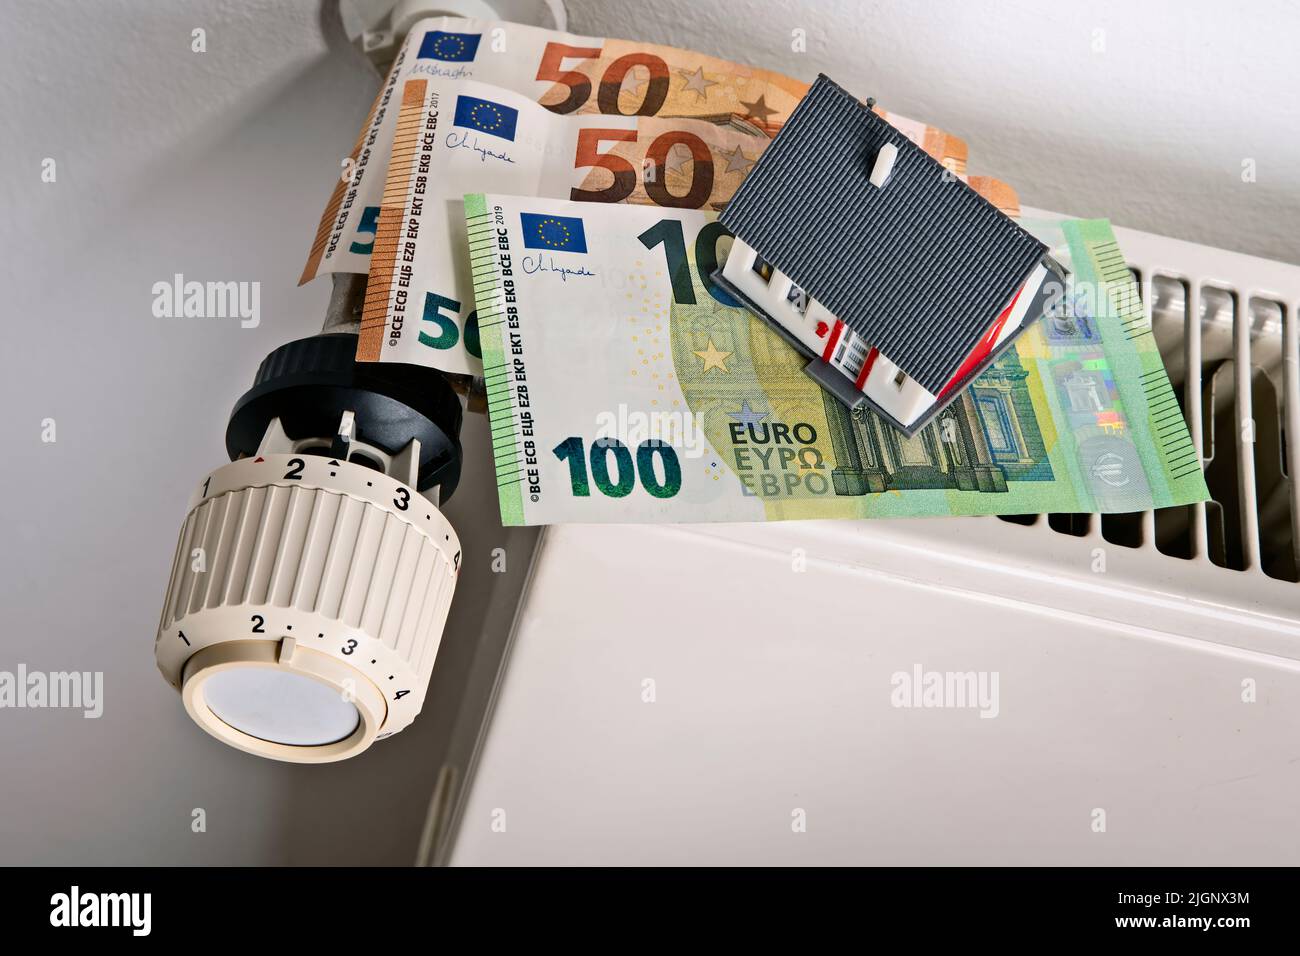 Radiatore e termostato con banconote in euro e casa come simbolo per l'aumento dei costi di riscaldamento Foto Stock